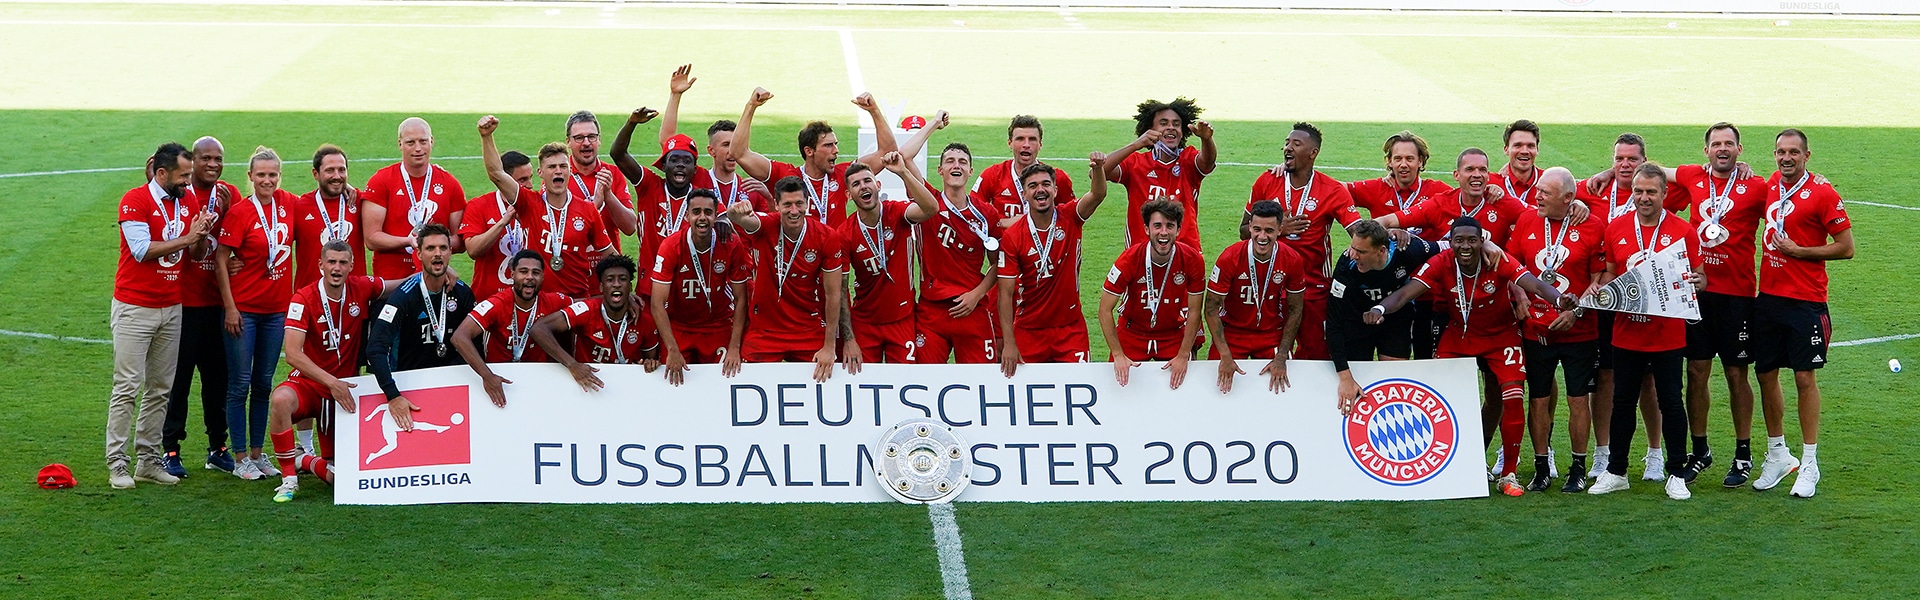 FC Bayern München: Das Fanerlebnis mit digitalen Lösungen perfektionieren